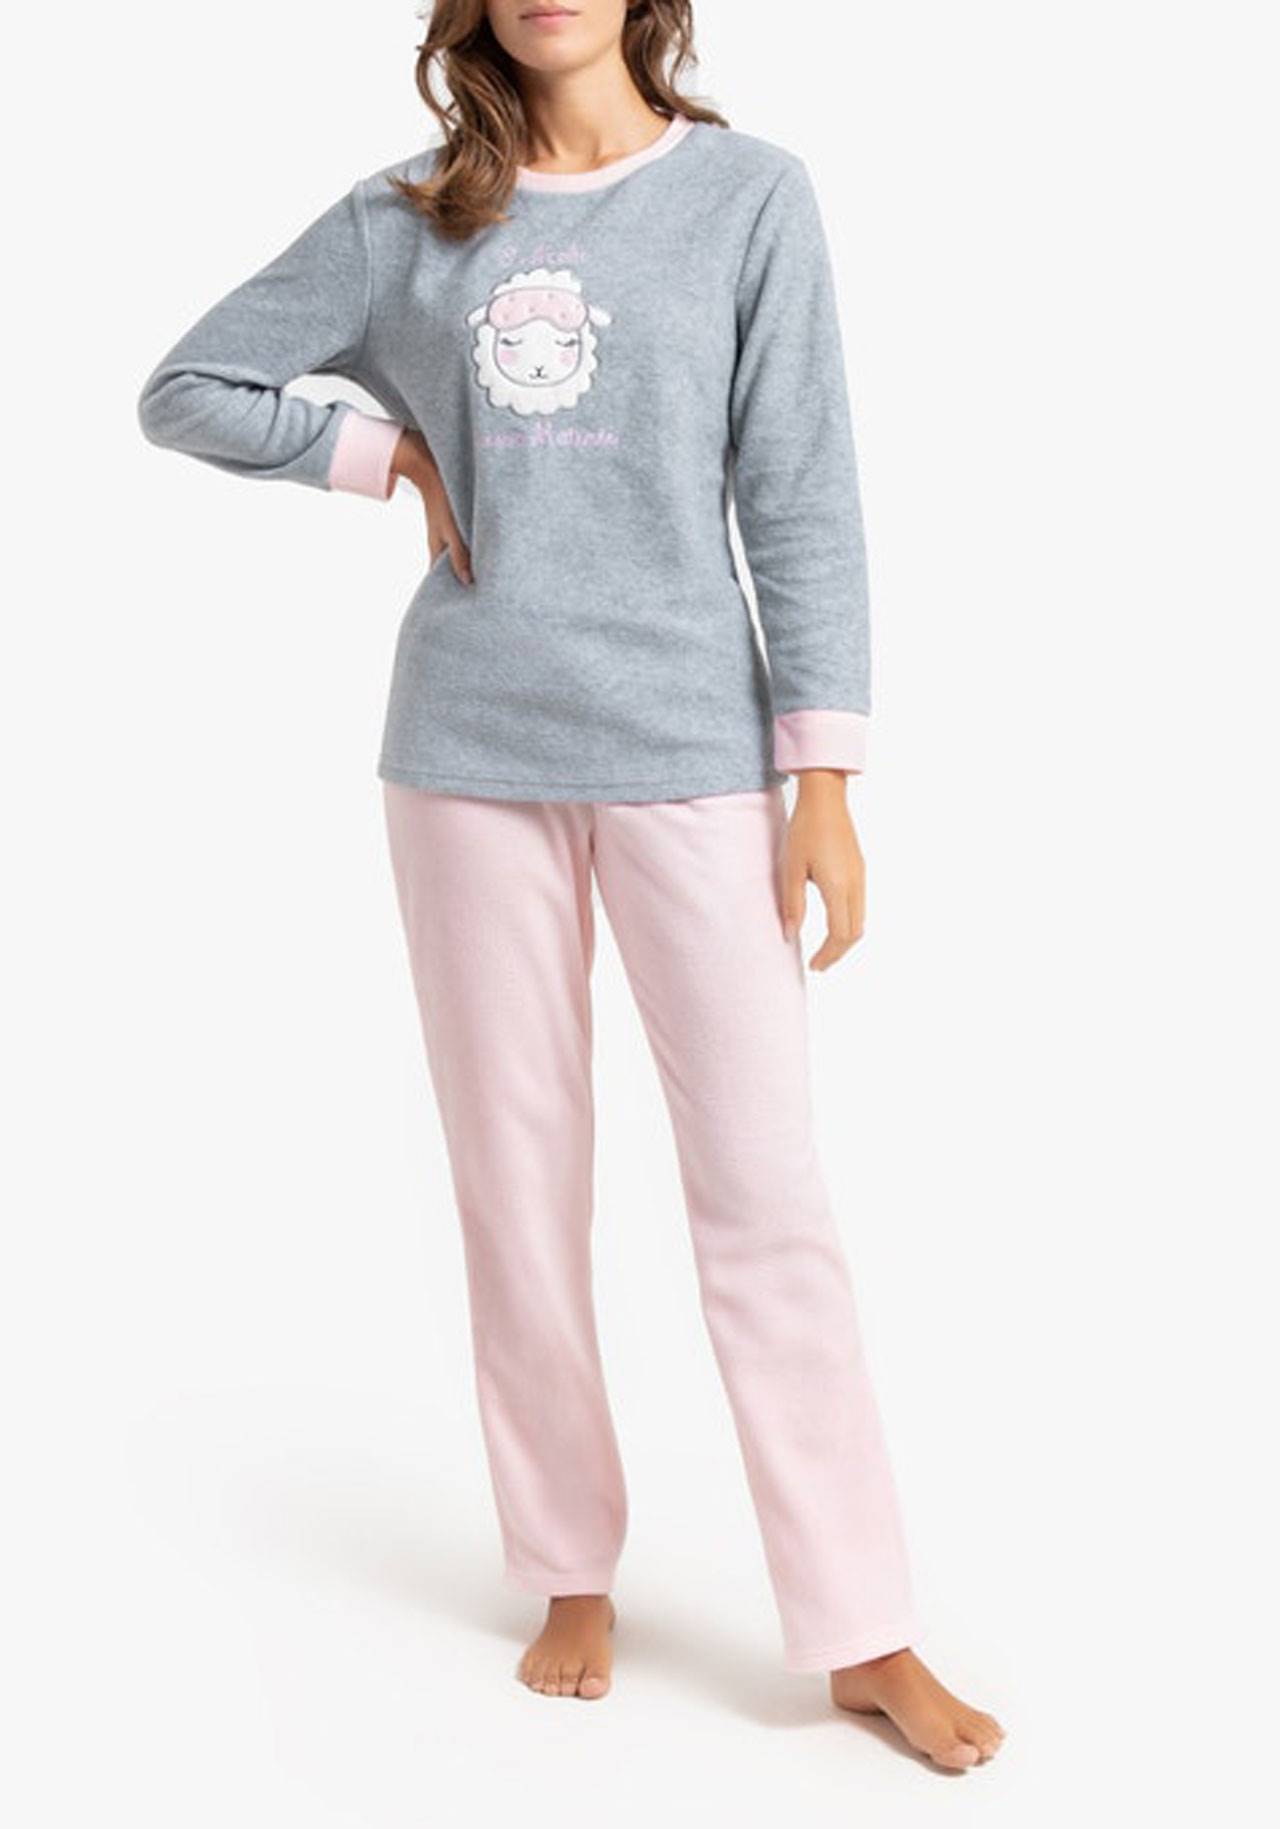 pijama-calentito-gris-y-rosa